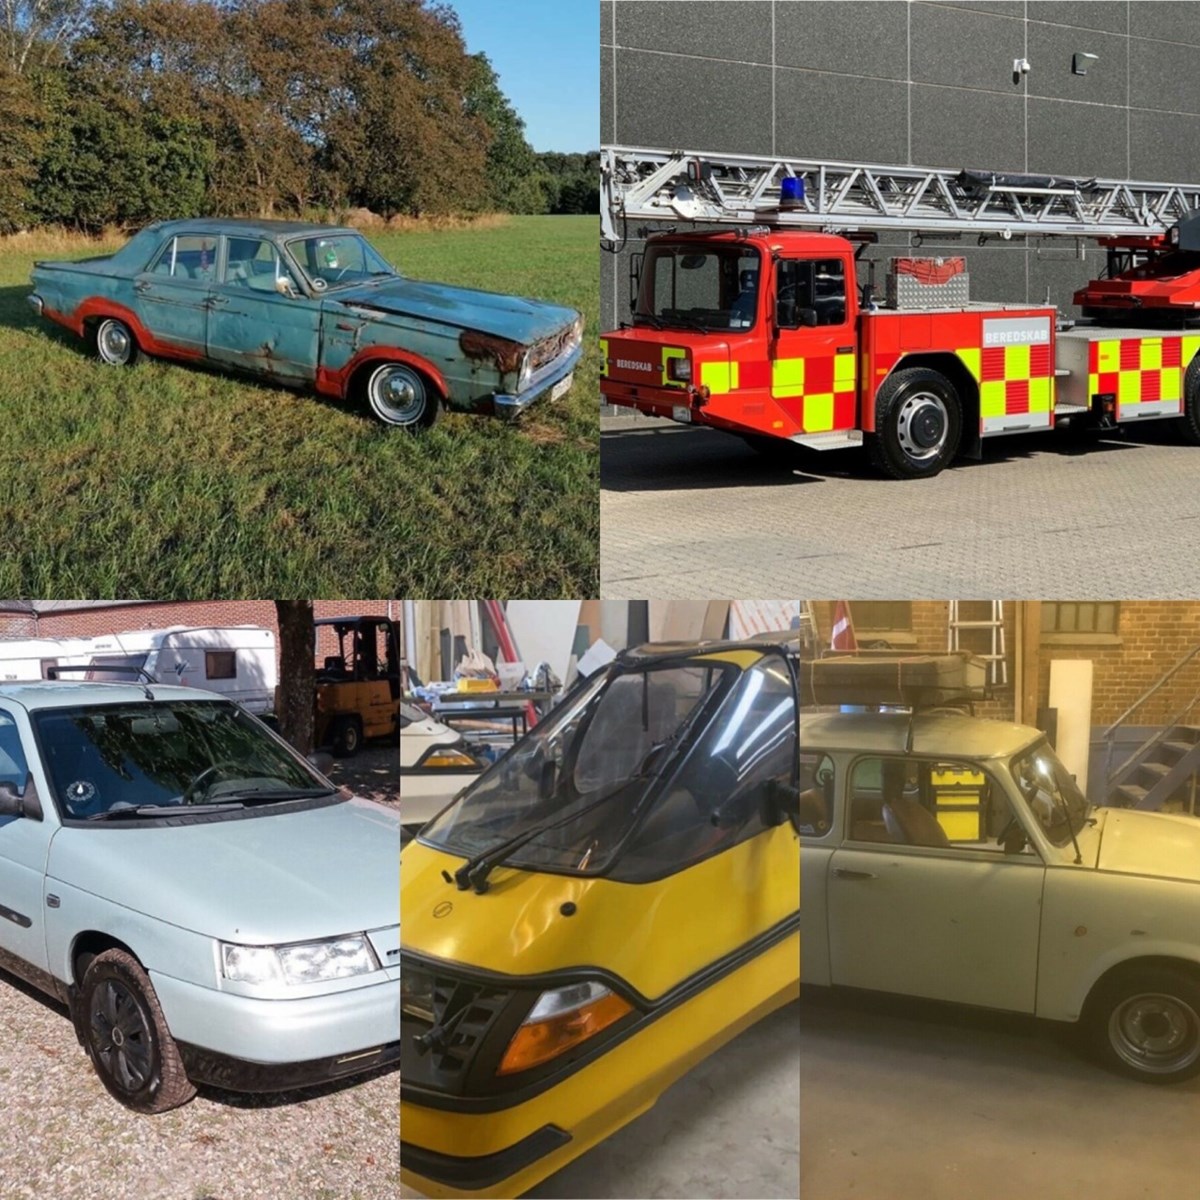 En brandbil, en kendisbil, en ellerts, en historisk bil samt et køretøj, der kun findes ét af i Danmark. Sådan kan disse fem biler opsummeres